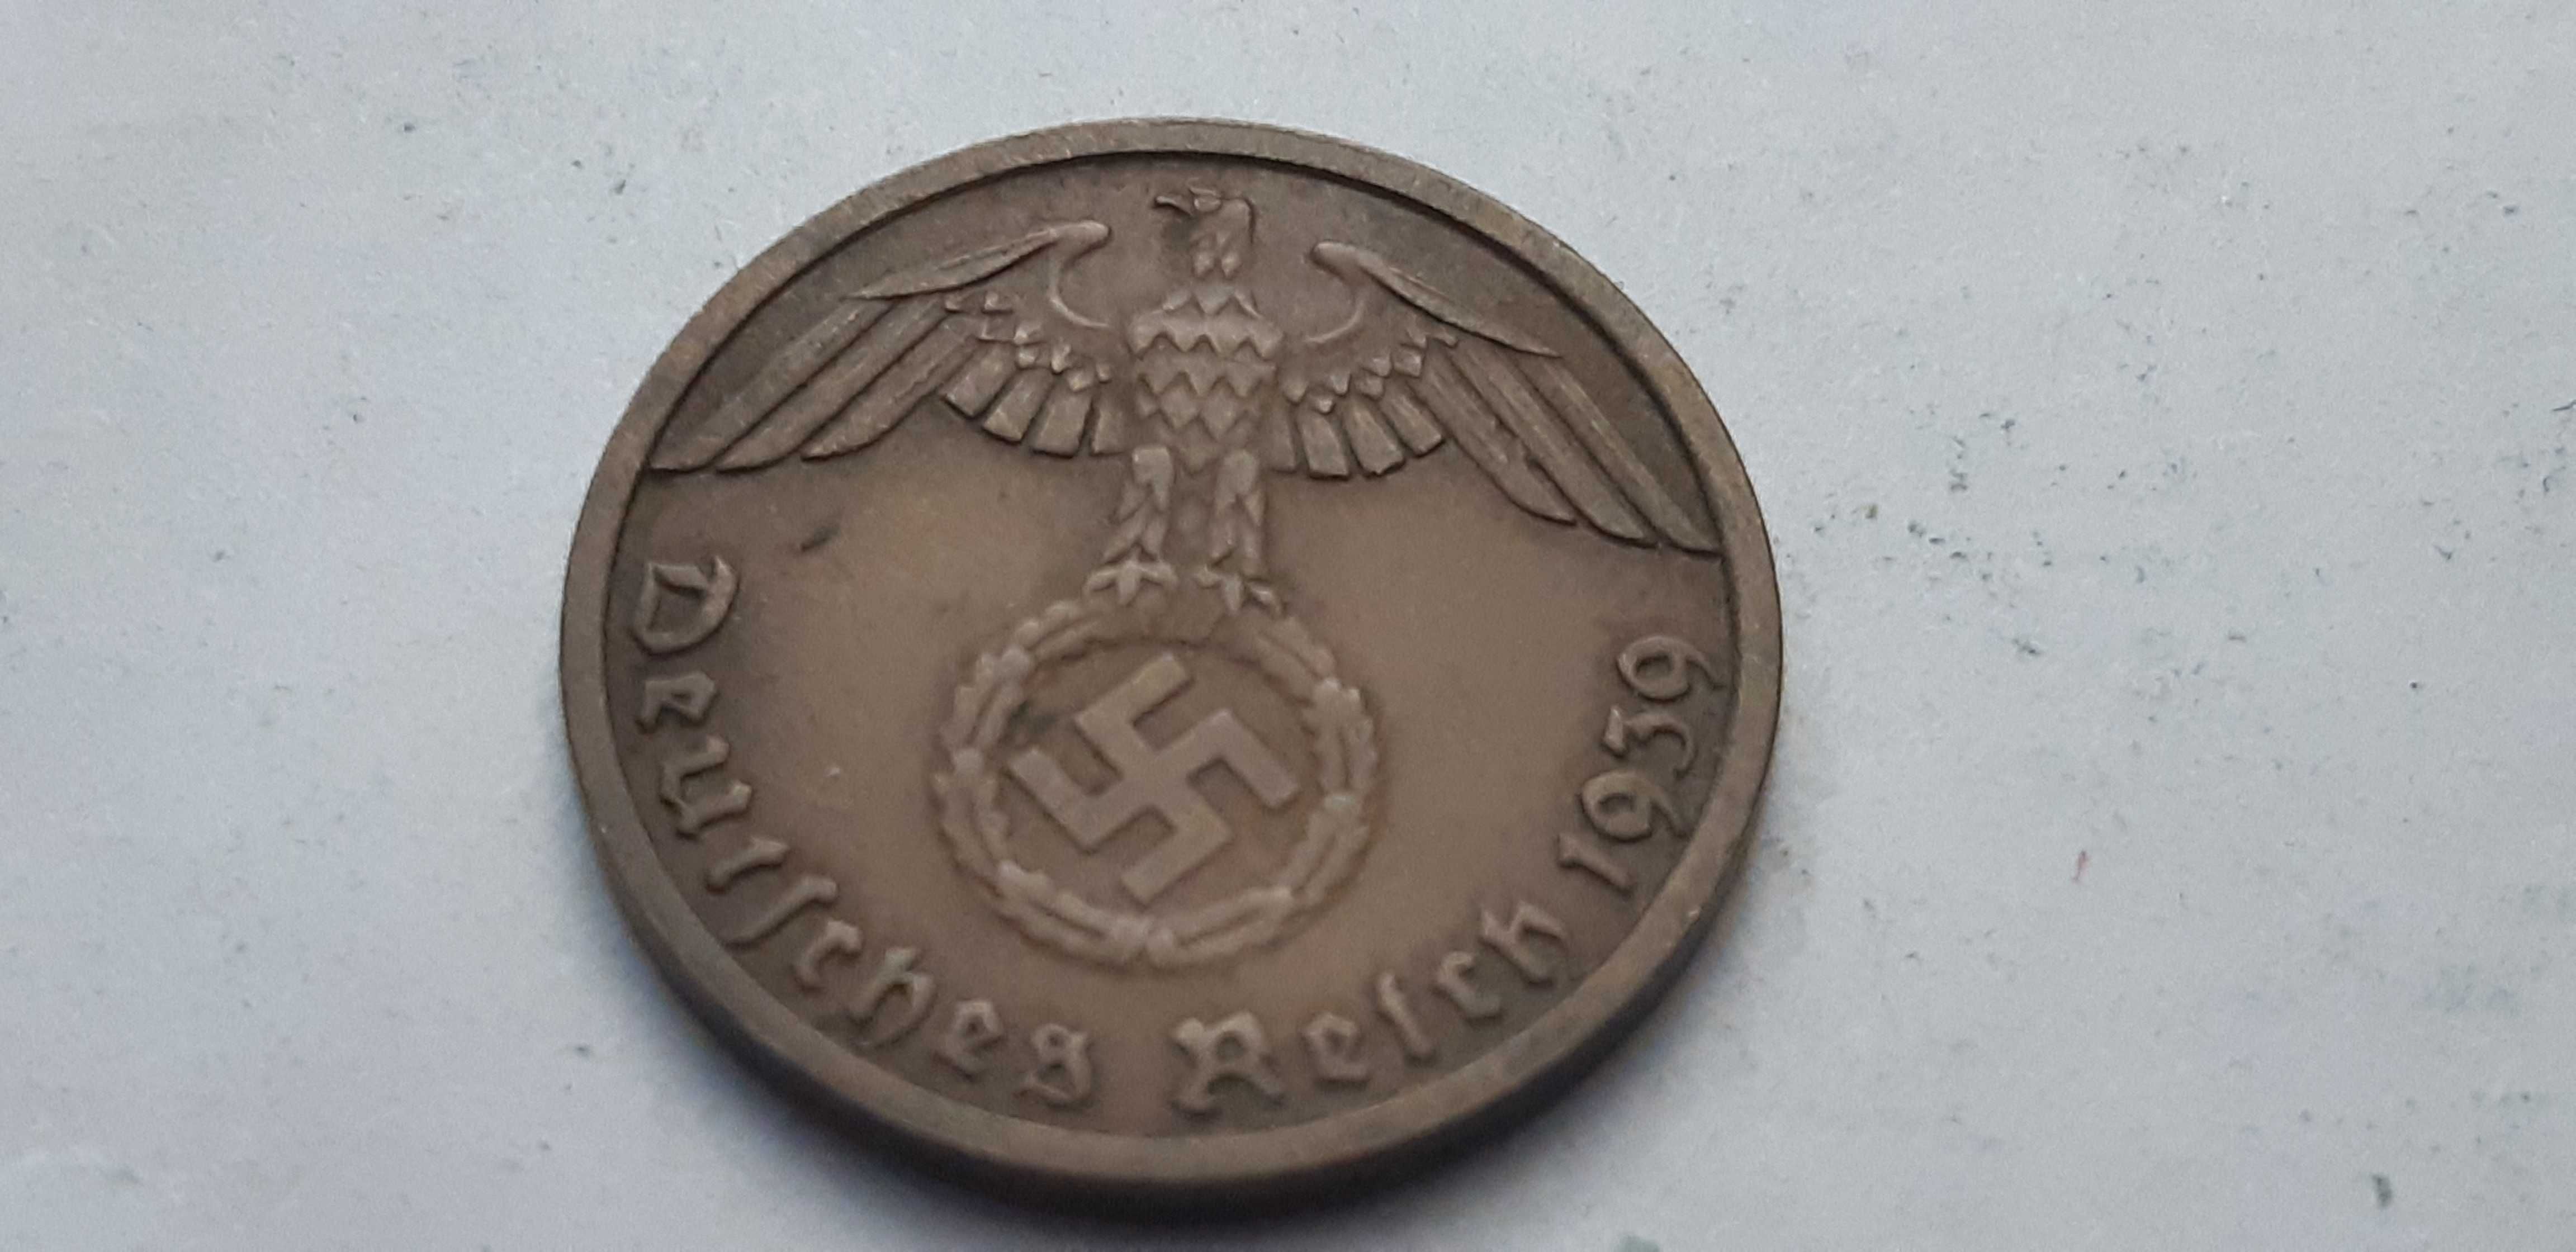 Niemcy III Rzesza 1 fenigi 1939 A - real foto